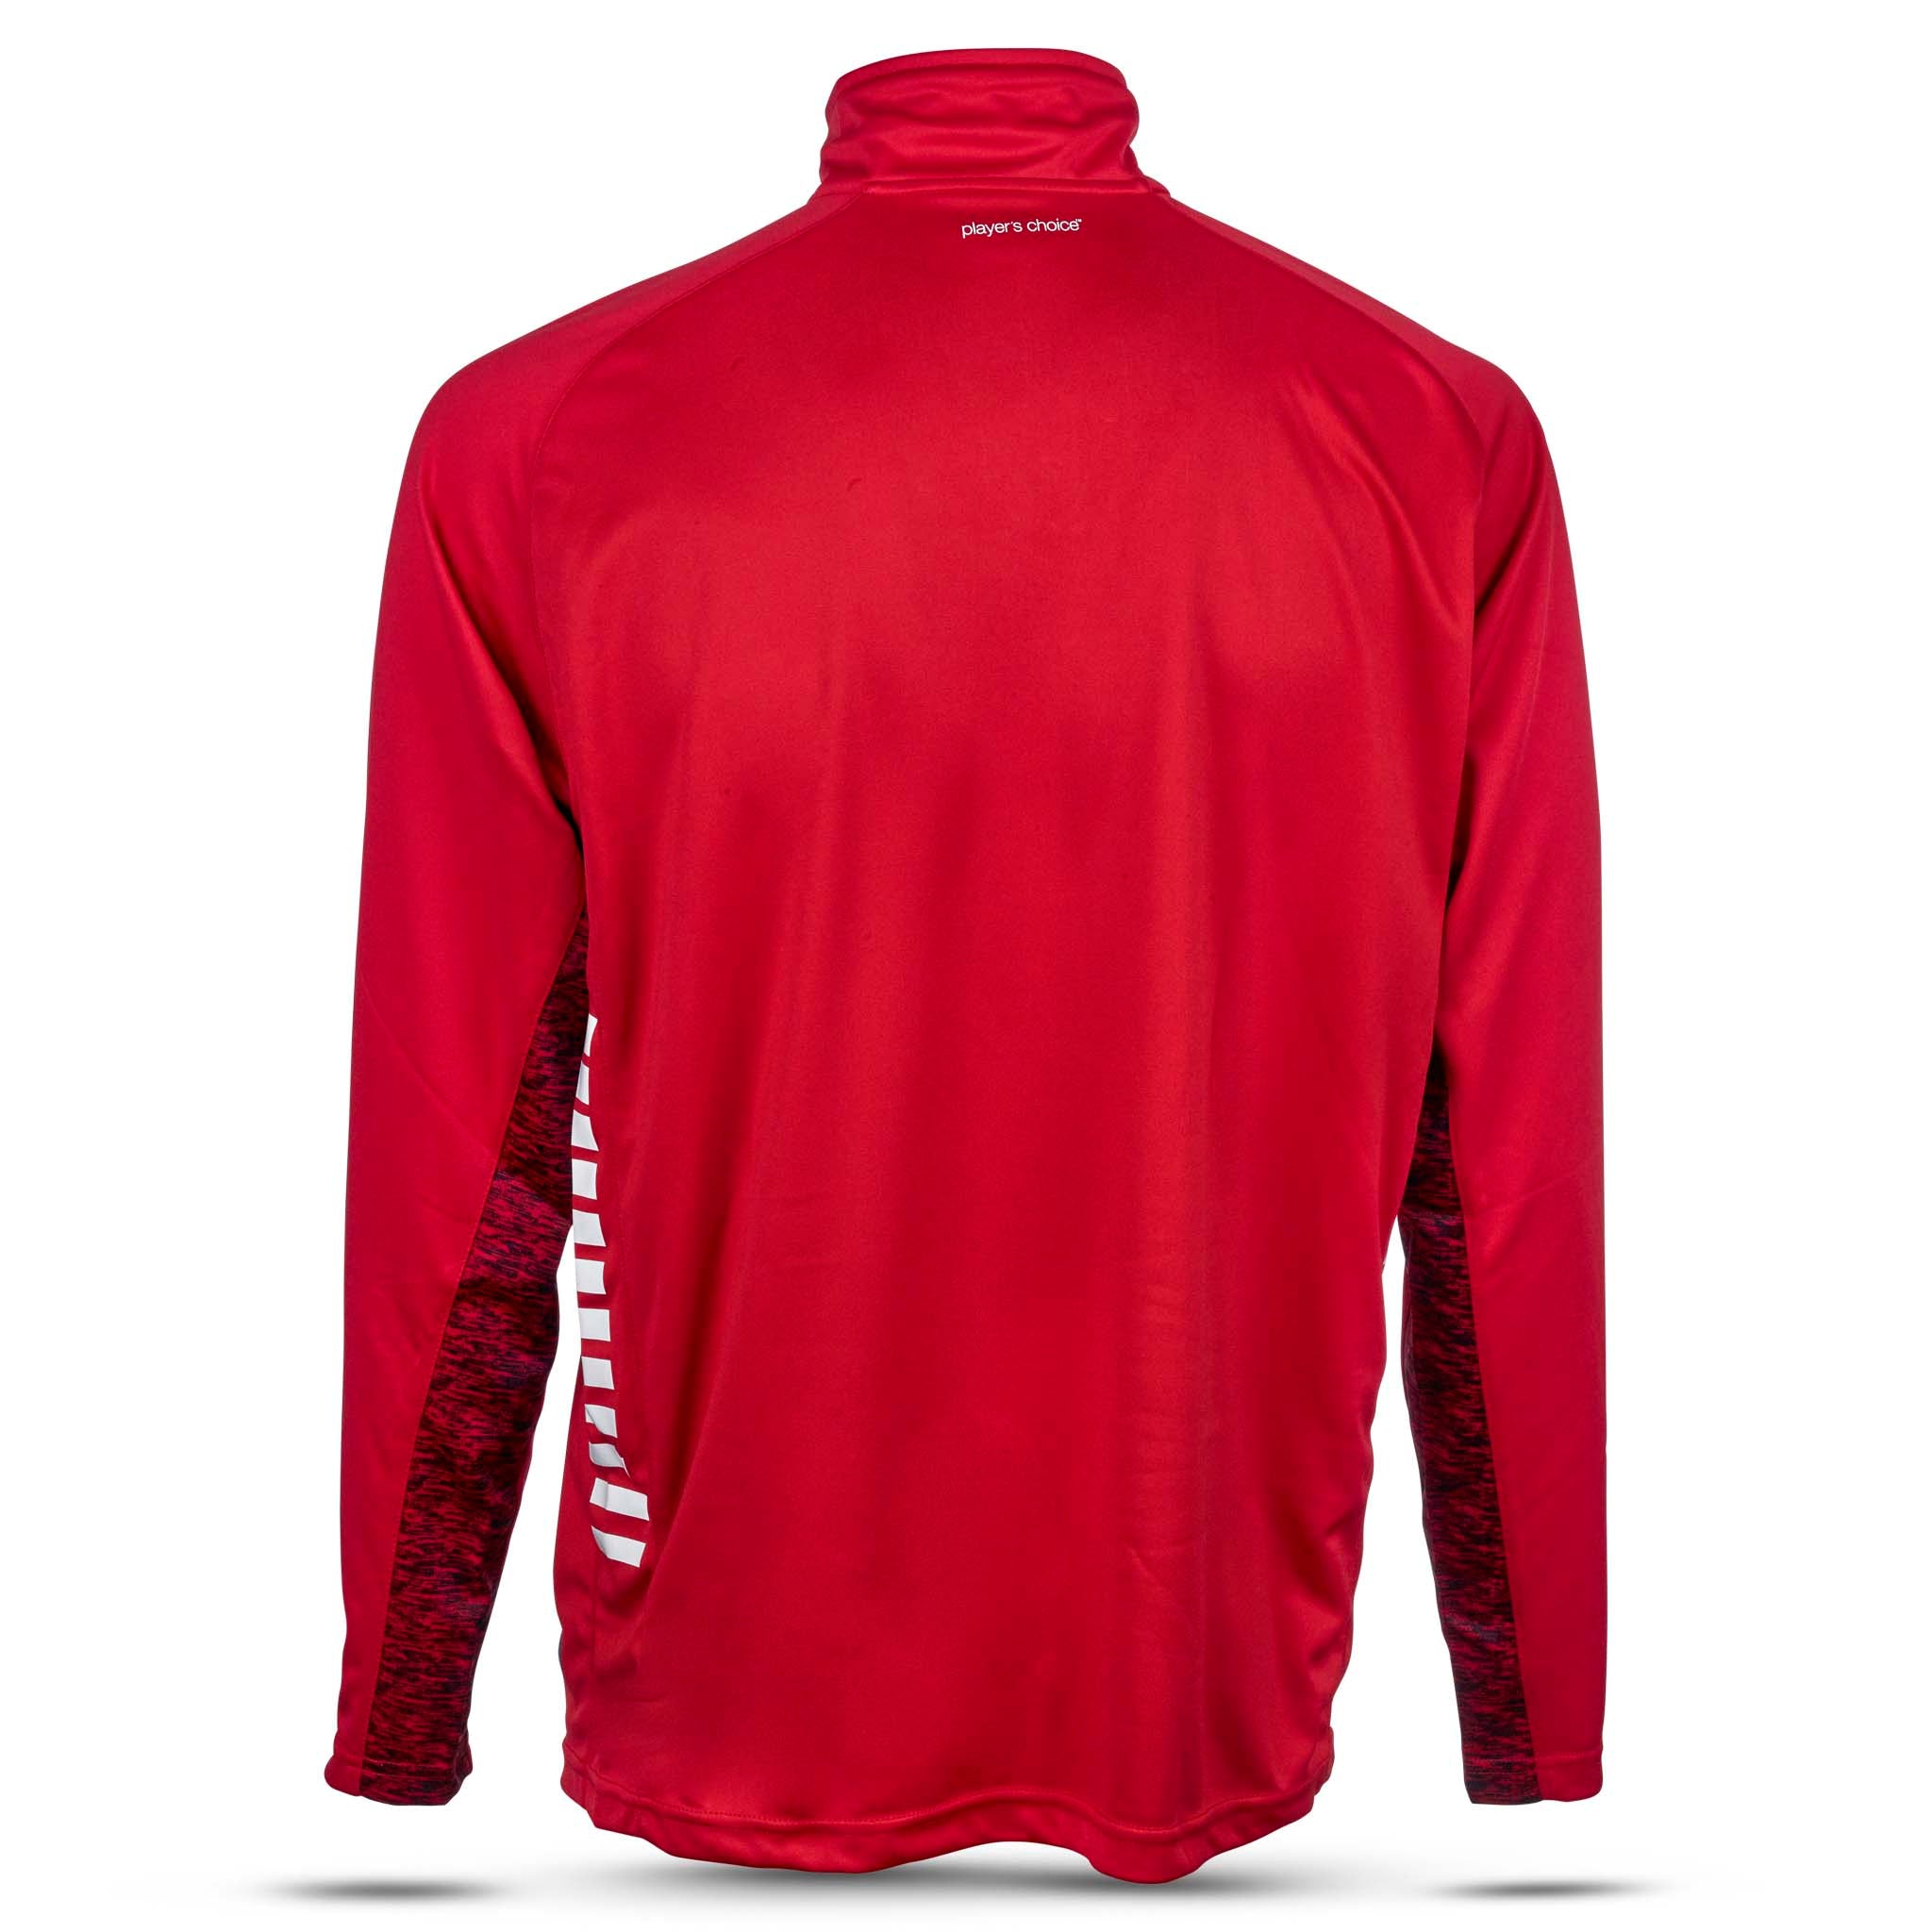 spain Träning sweatshirt 1/2 zip #färg_röd